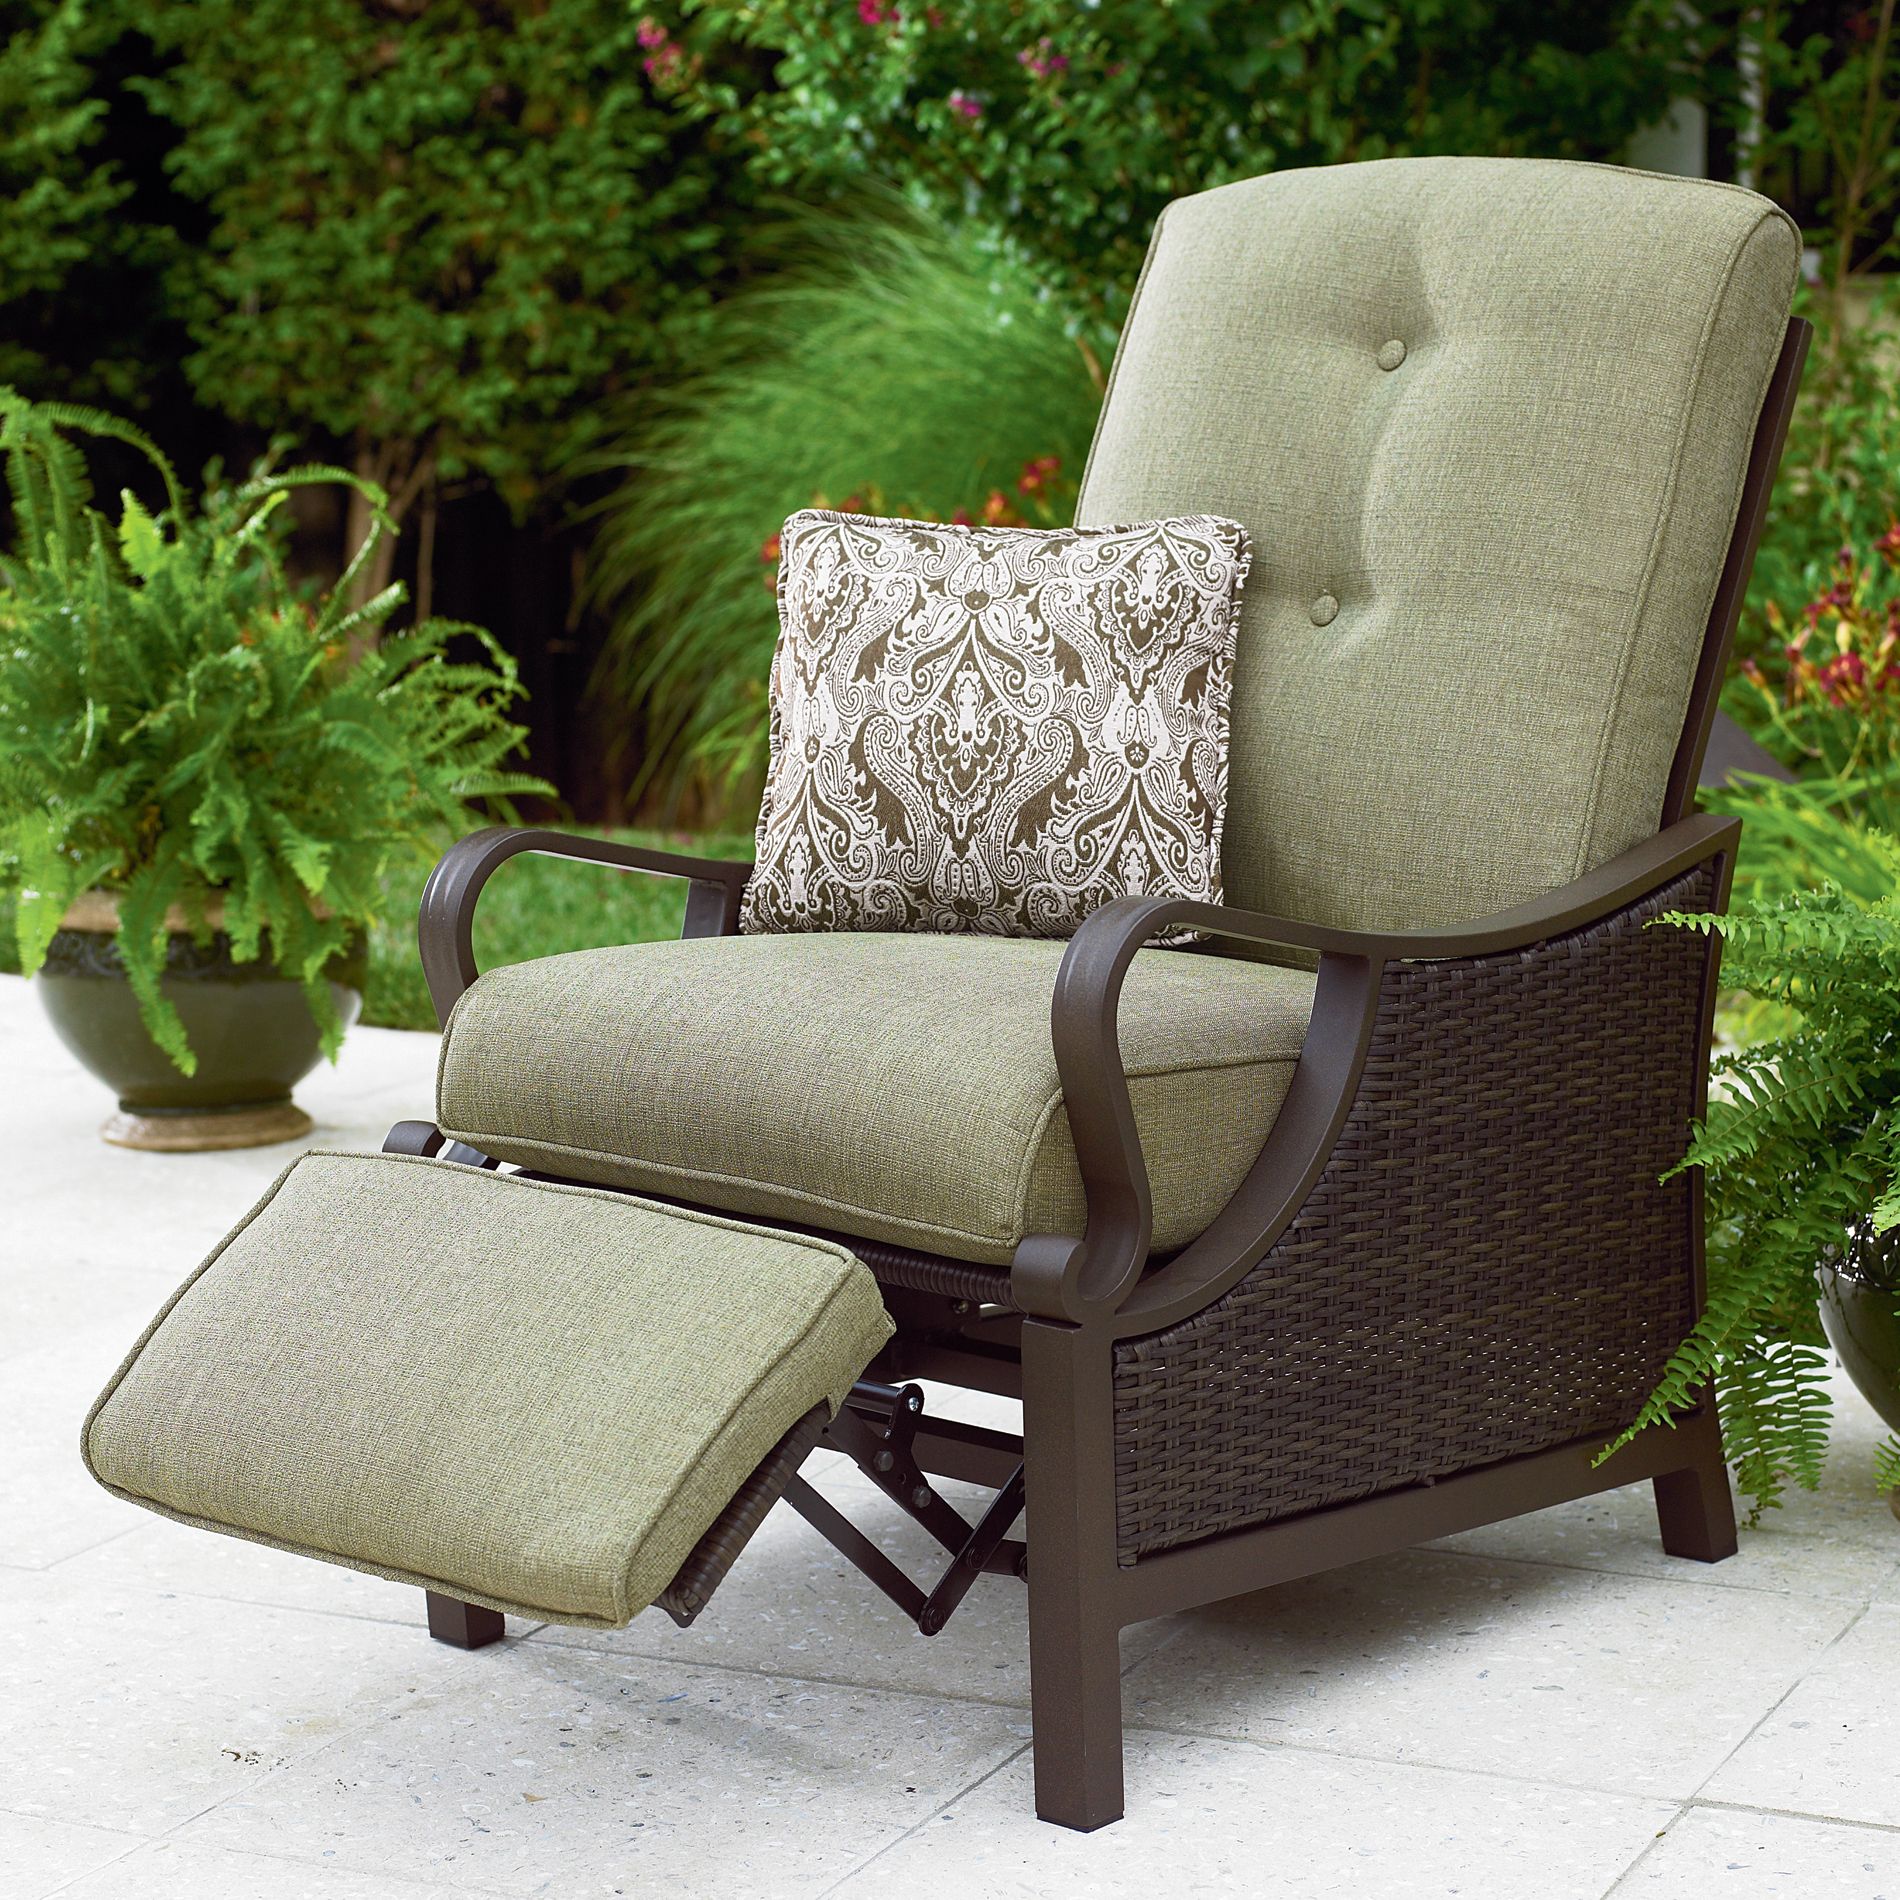 la-z-boy outdoor - dpst-rc - preston outdoor recliner | sears outlet